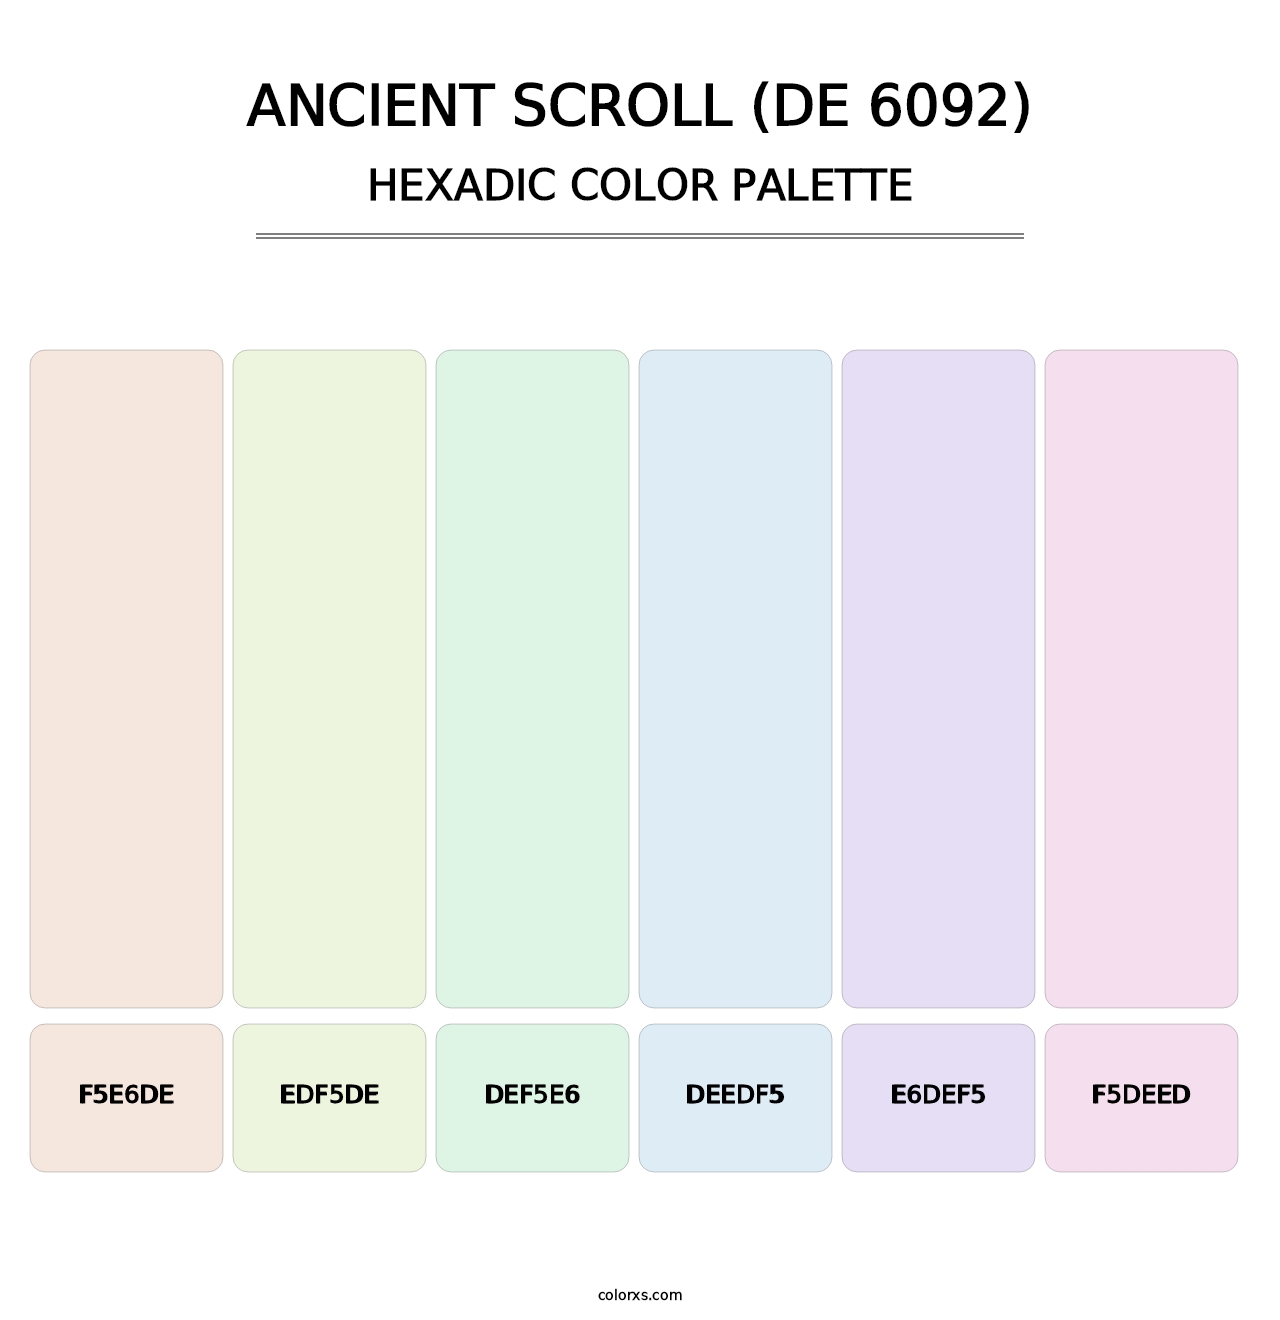 Ancient Scroll (DE 6092) - Hexadic Color Palette